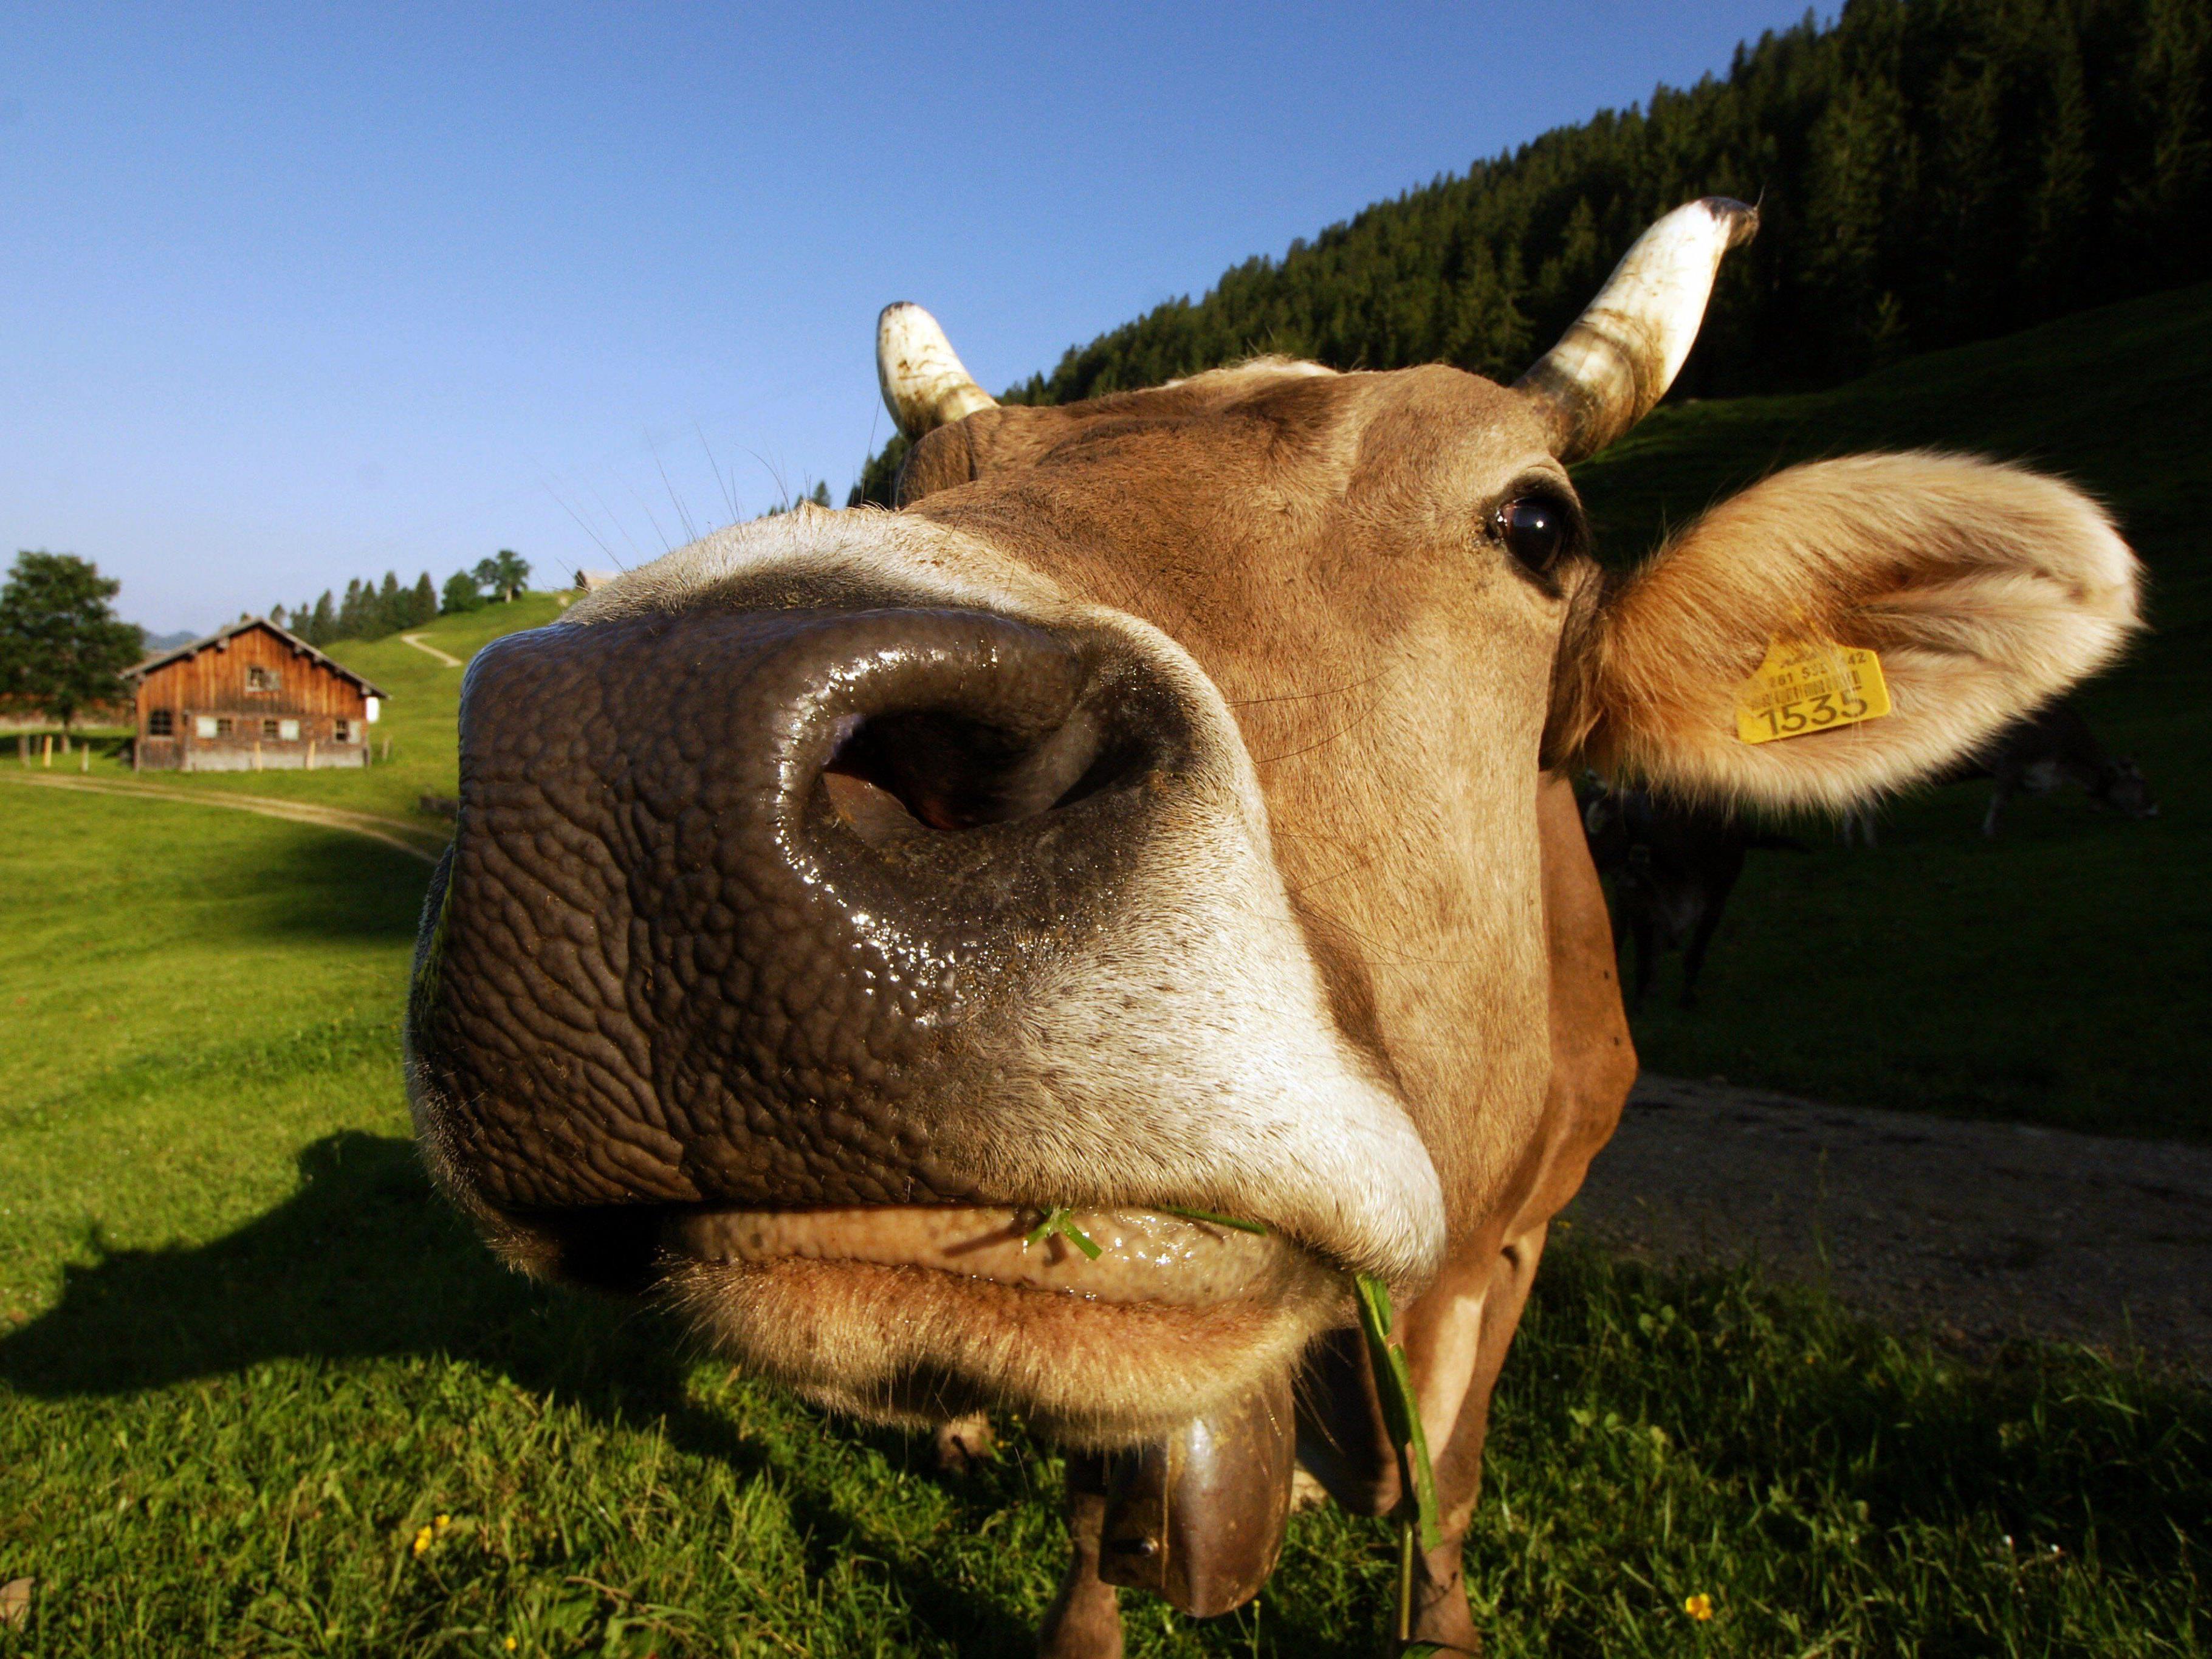 Deutsche Tierschützer halten Kuhglocken für Tierquälerei und fordern Verbot.